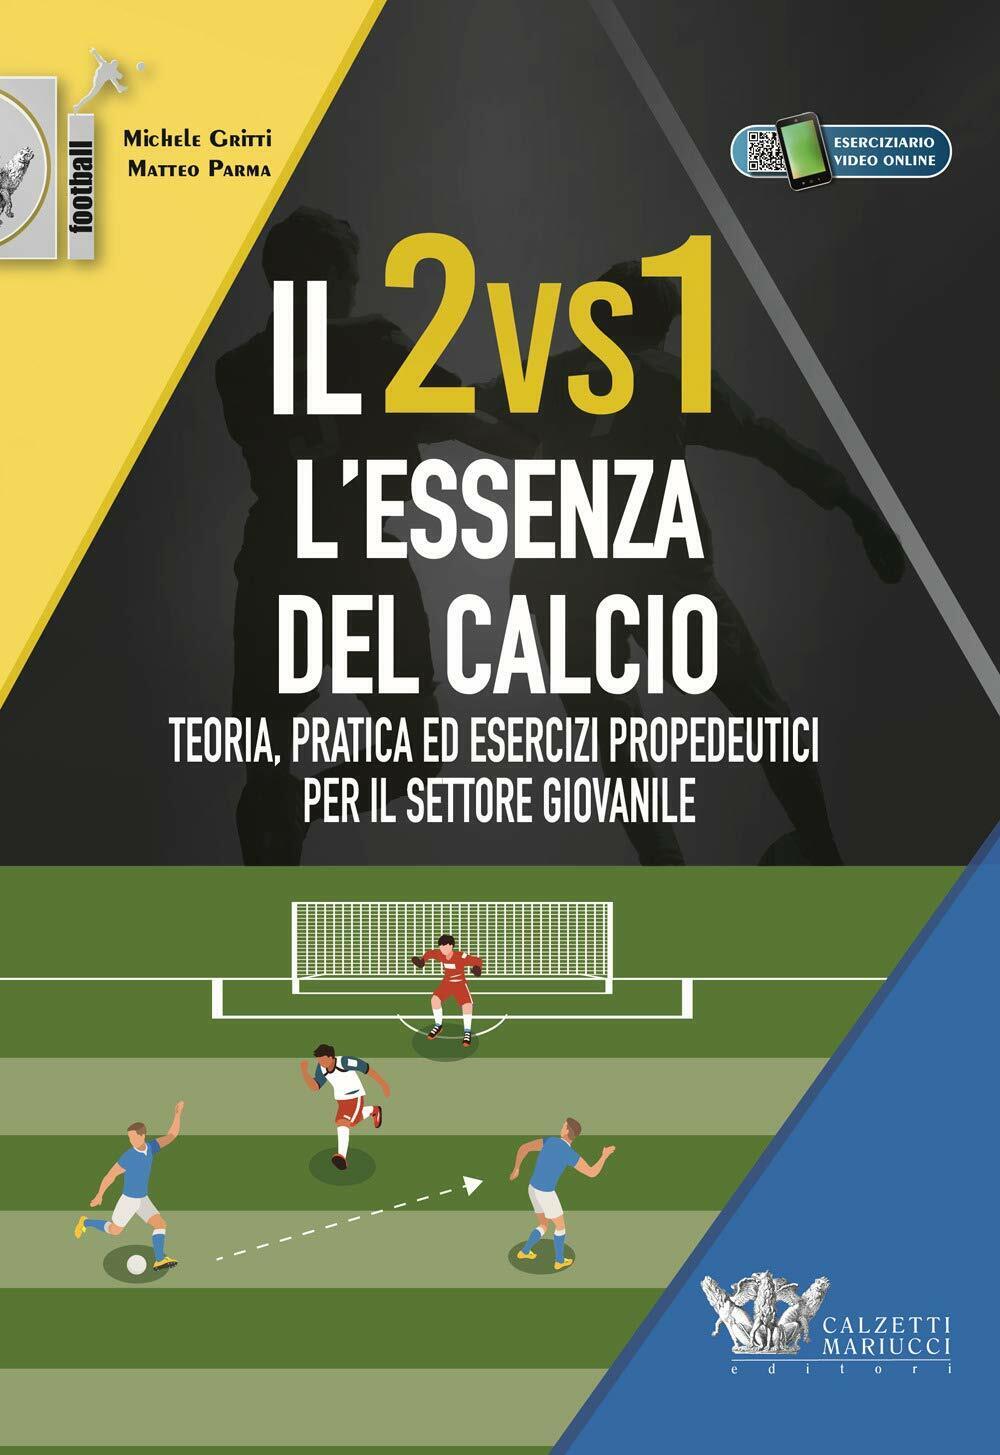 Il 2vs1. L'essenza del calcio - Michele Gritti, Matteo Parma - 2020